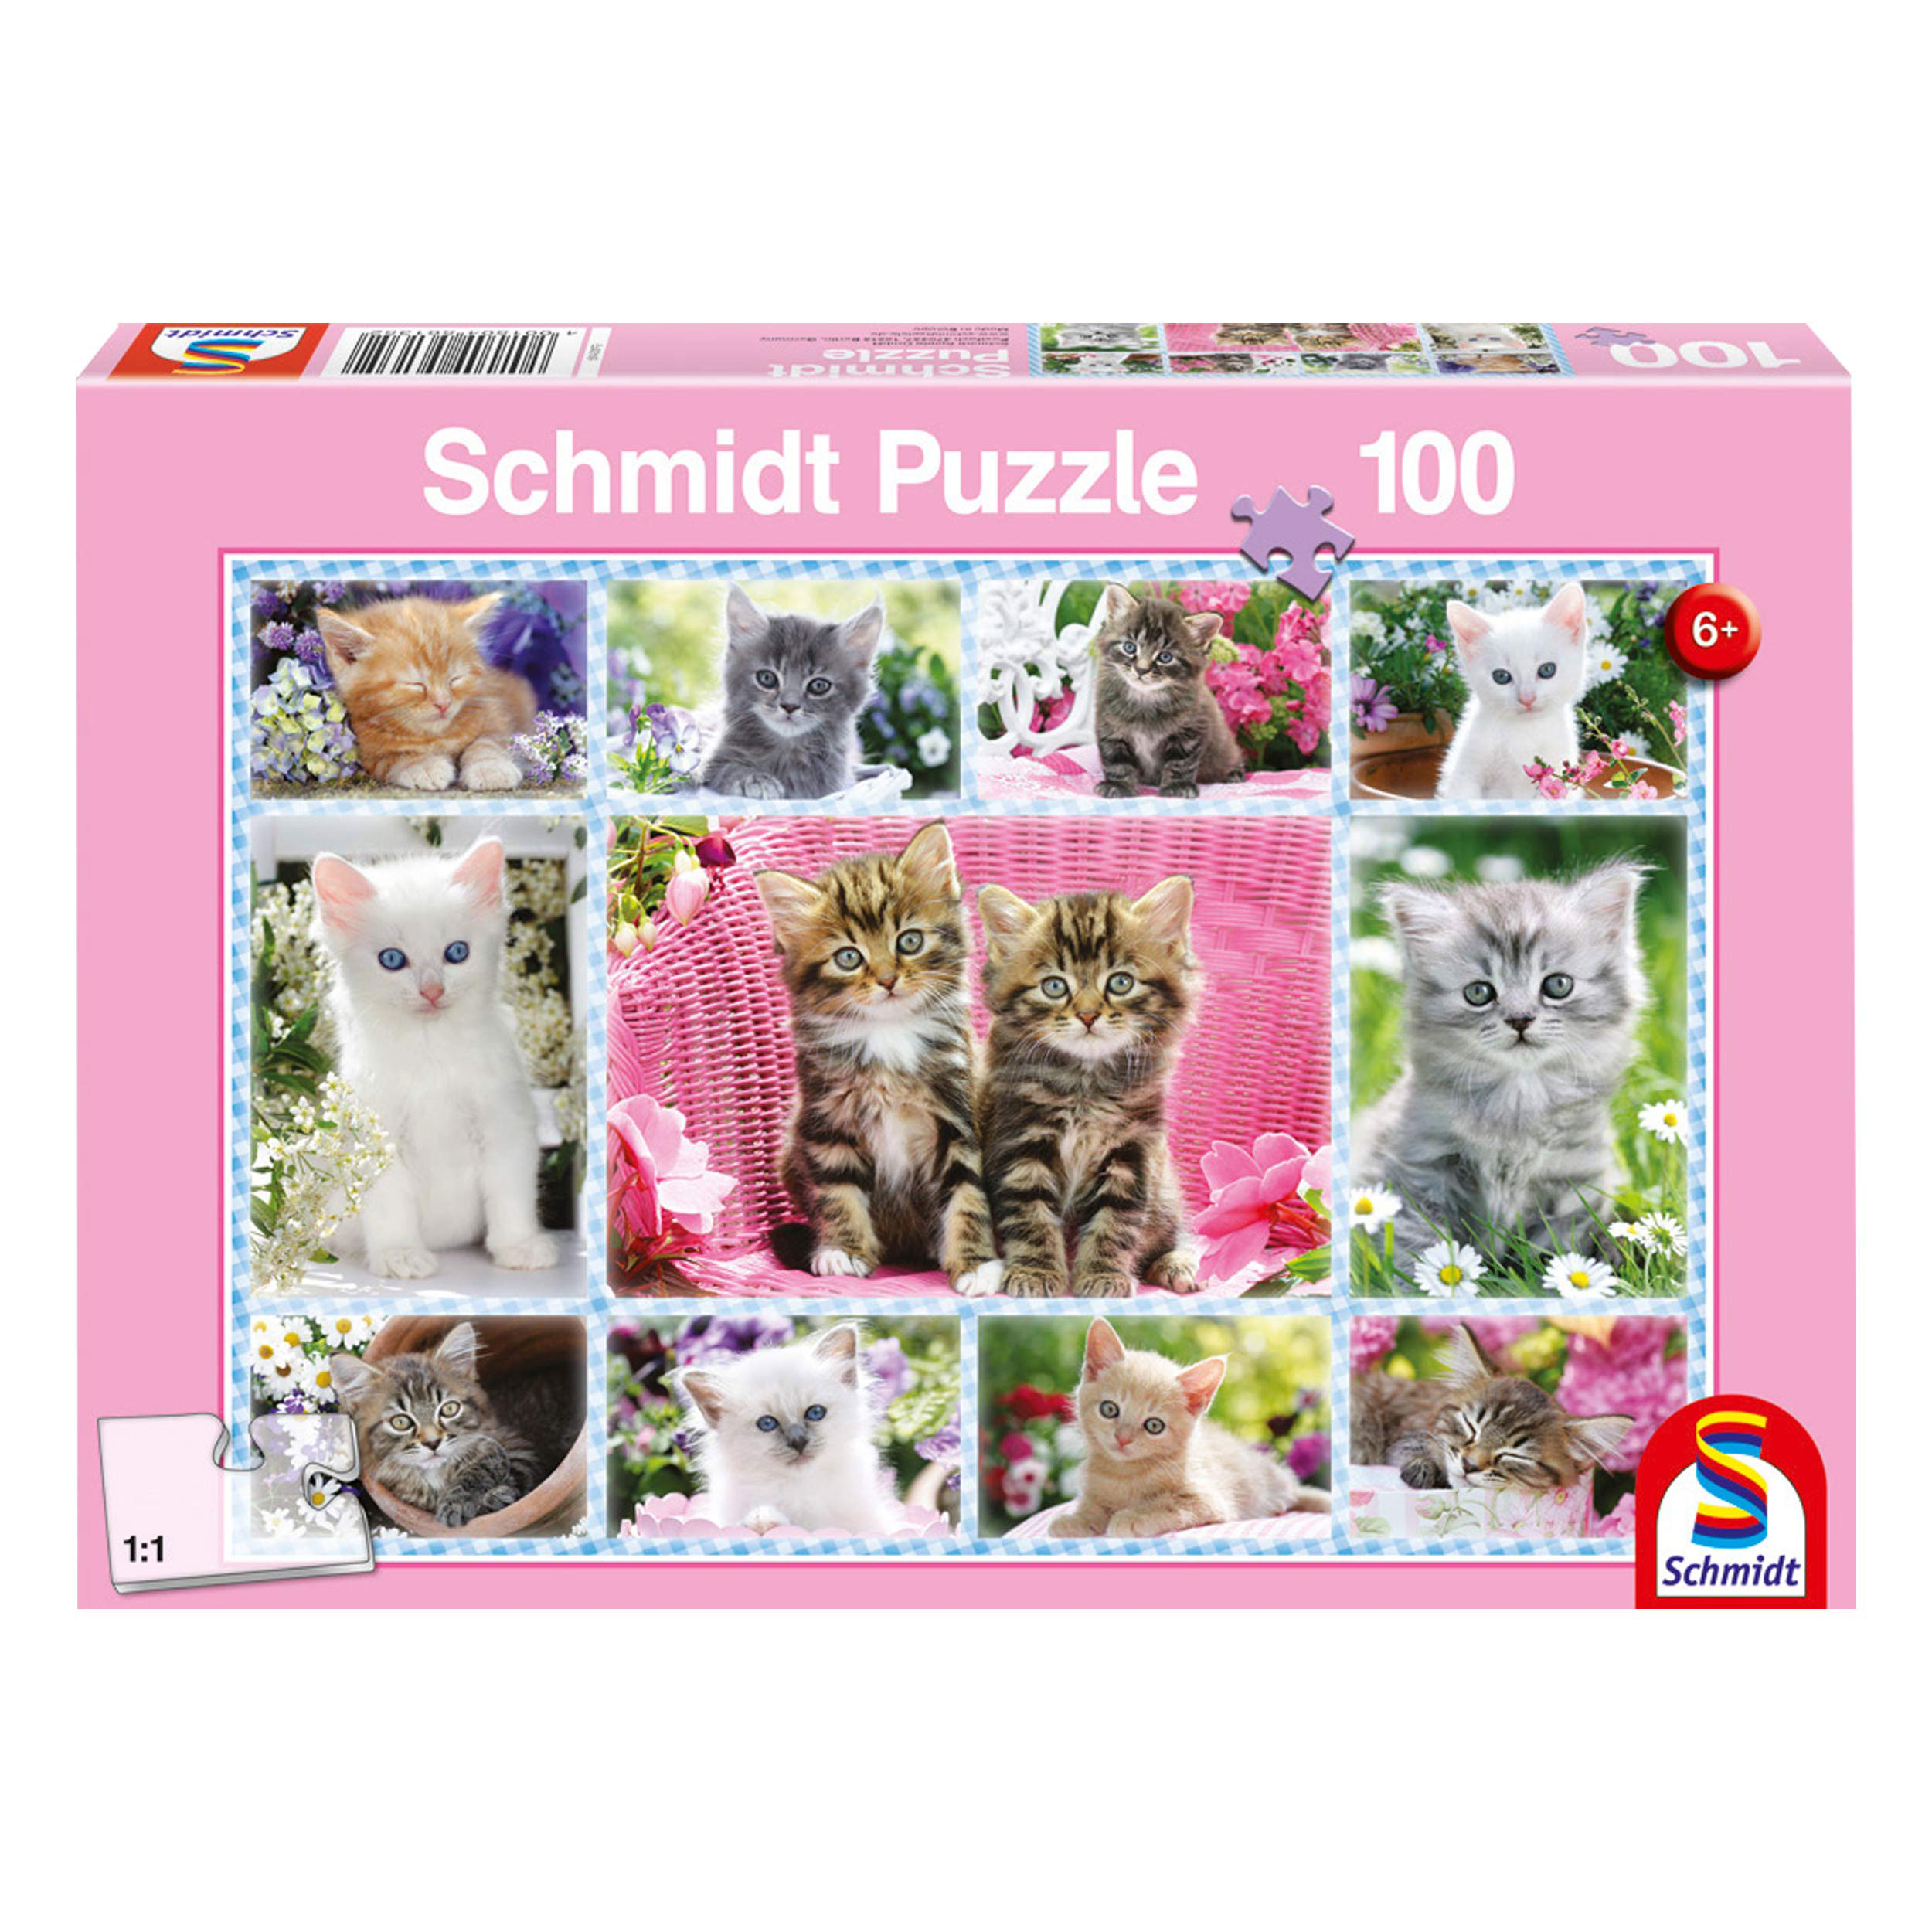 Katzenbabys - SPIELE SCHMIDT 100 Puzzle Puzzle Teile